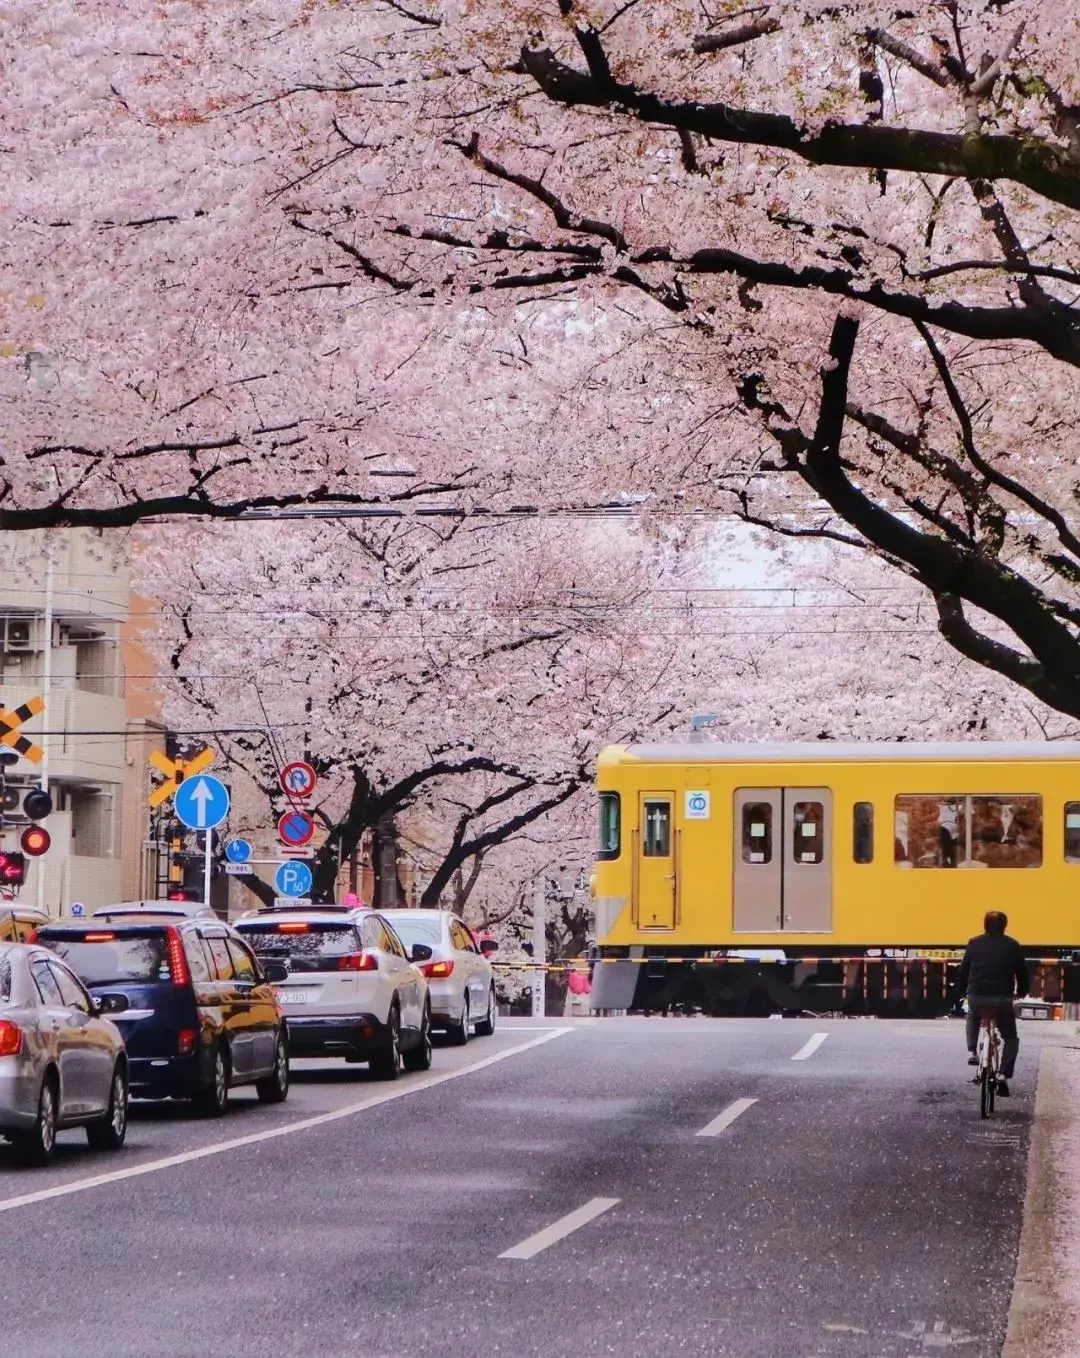 电车开进樱花林,这不就是最唯美的日剧场景吗?